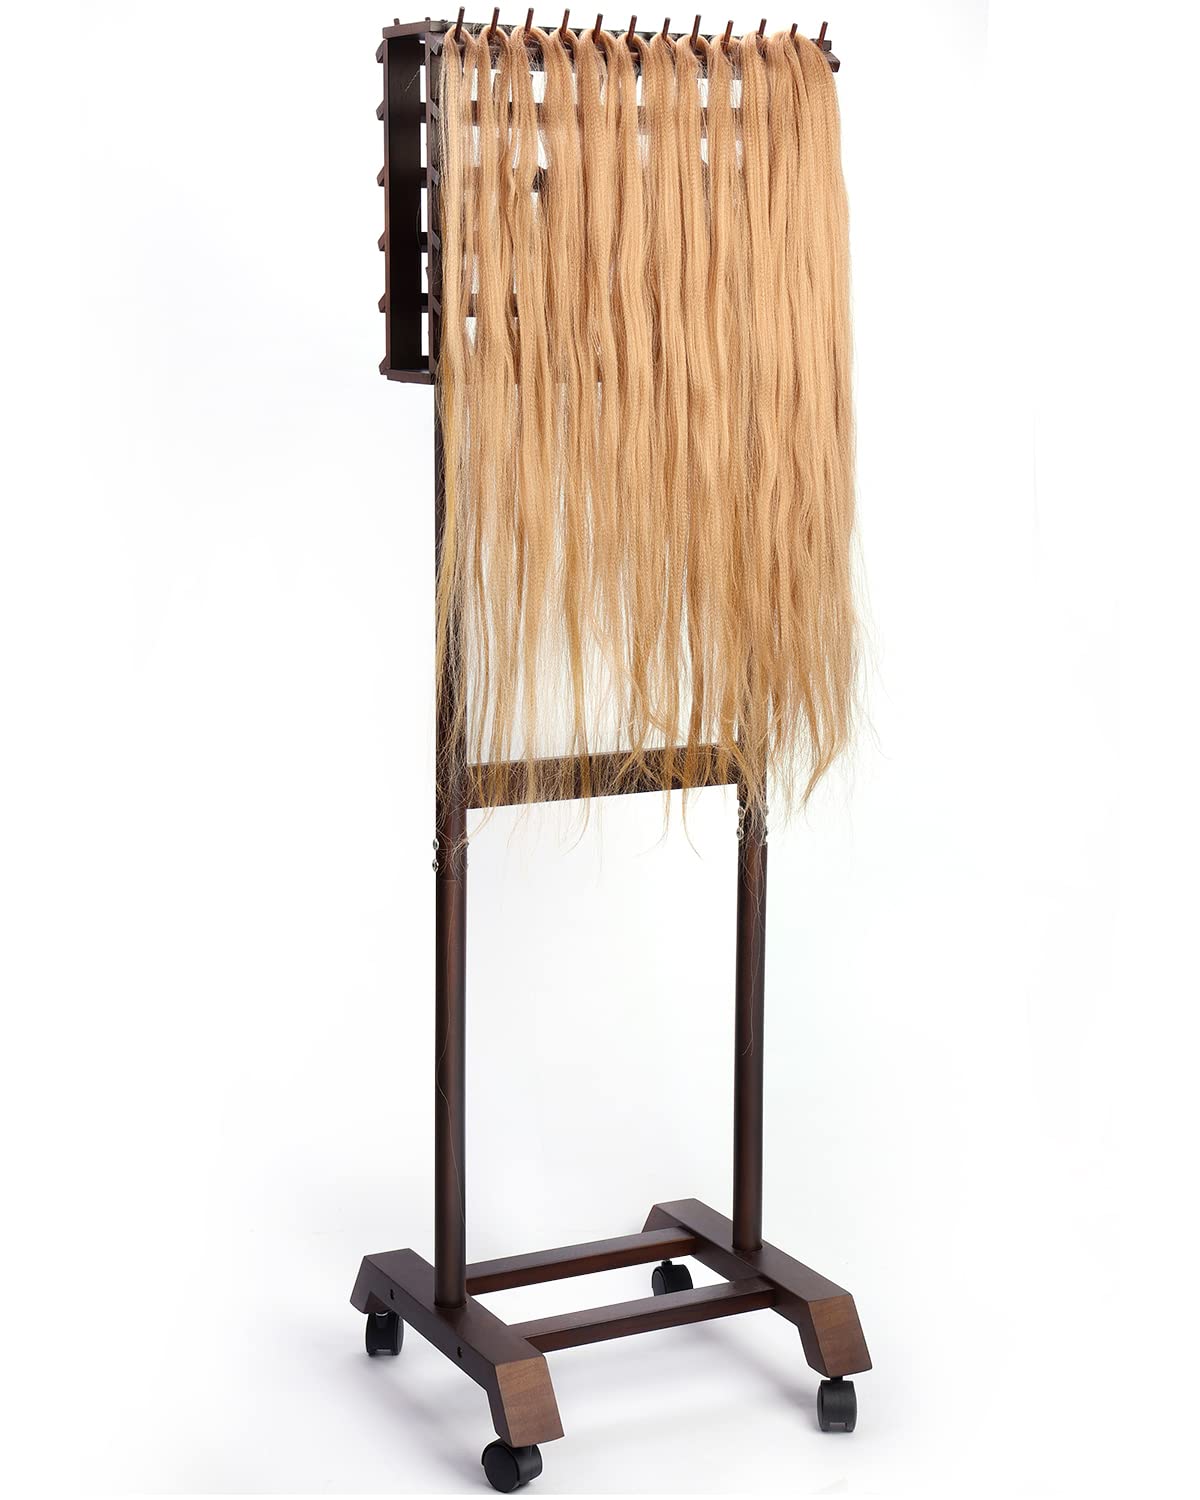 LIVSMON Braiding Hair Rack Bamboo Hair Rack for Braiding Hair Time